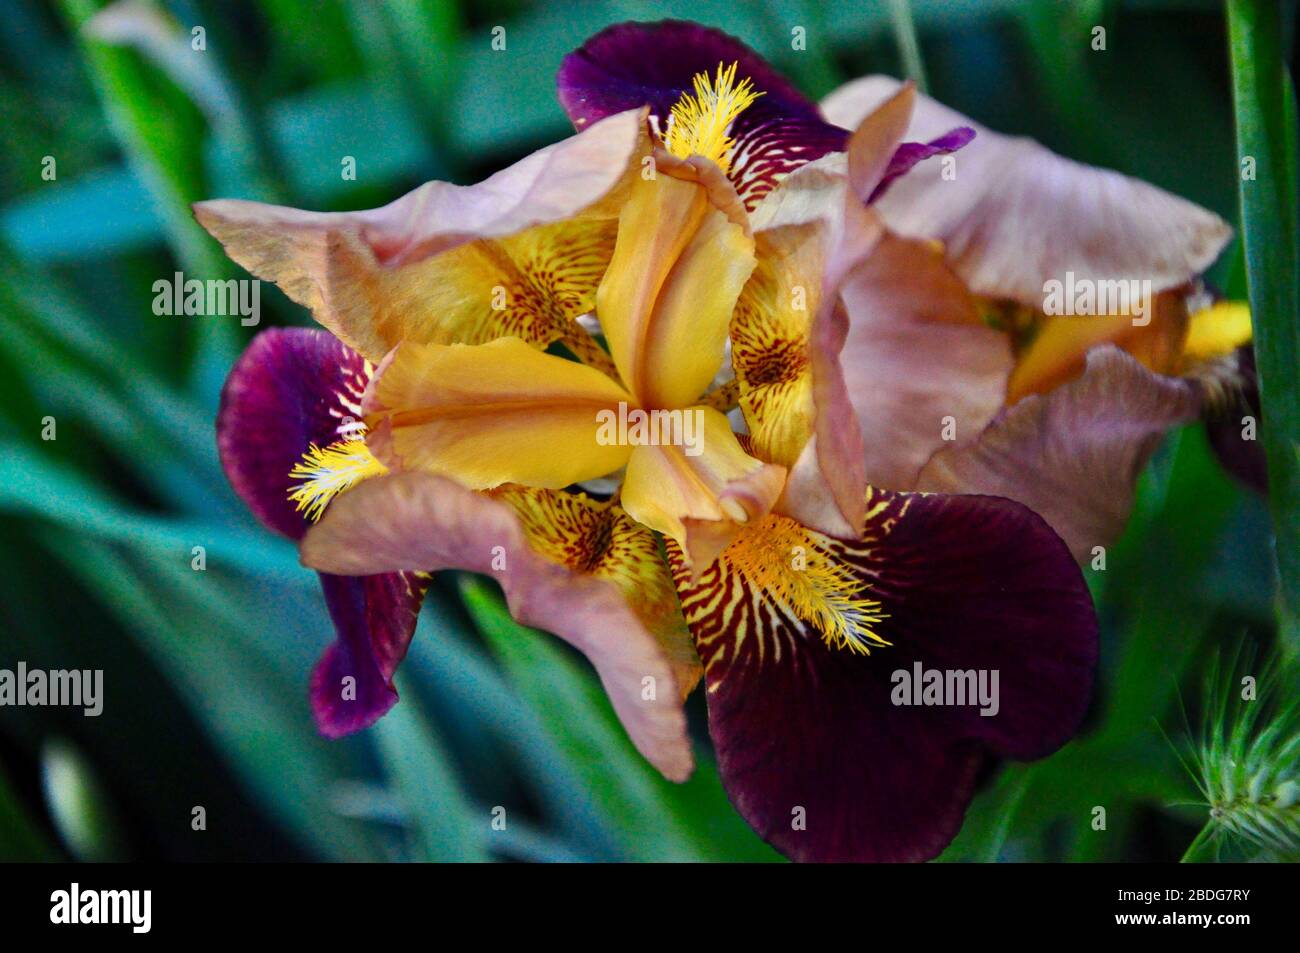 Gros plan d'une seule fleur d'iris en fleurs d'or et de violet.belle fleur d'iris violet foncé isolée sur fond vert. Banque D'Images